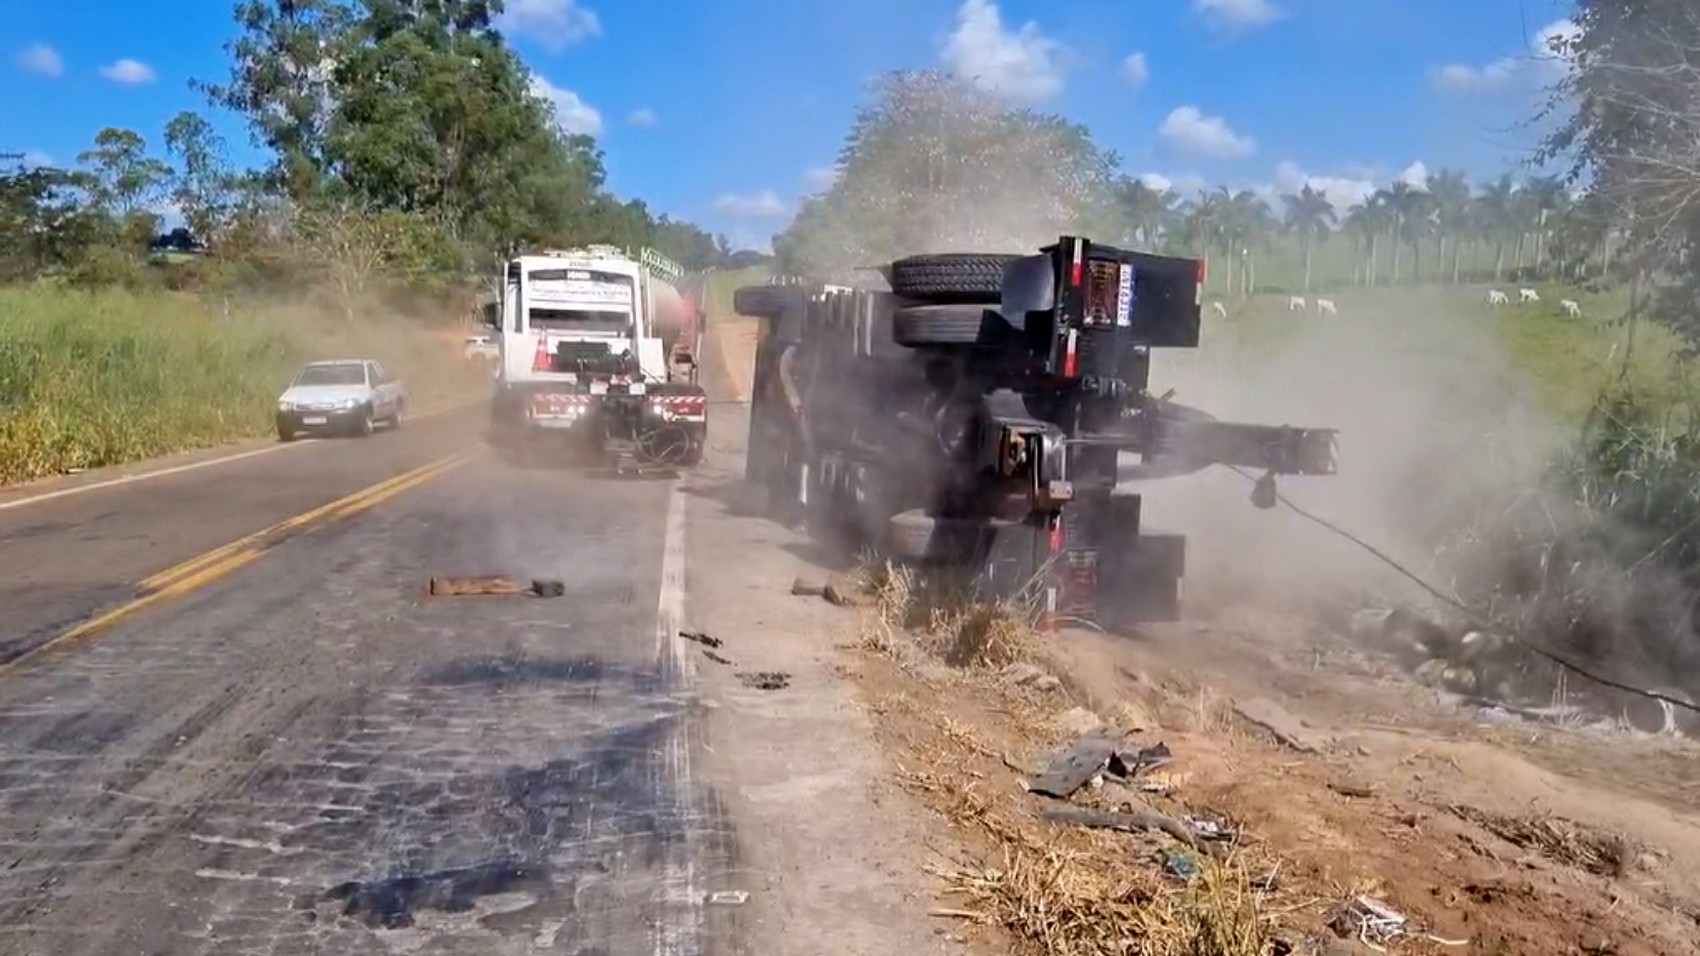 Caminhão-guincho tomba ao tentar retirar de córrego carreta envolvida em acidente na MG-344, entre Cássia e Pratápolis